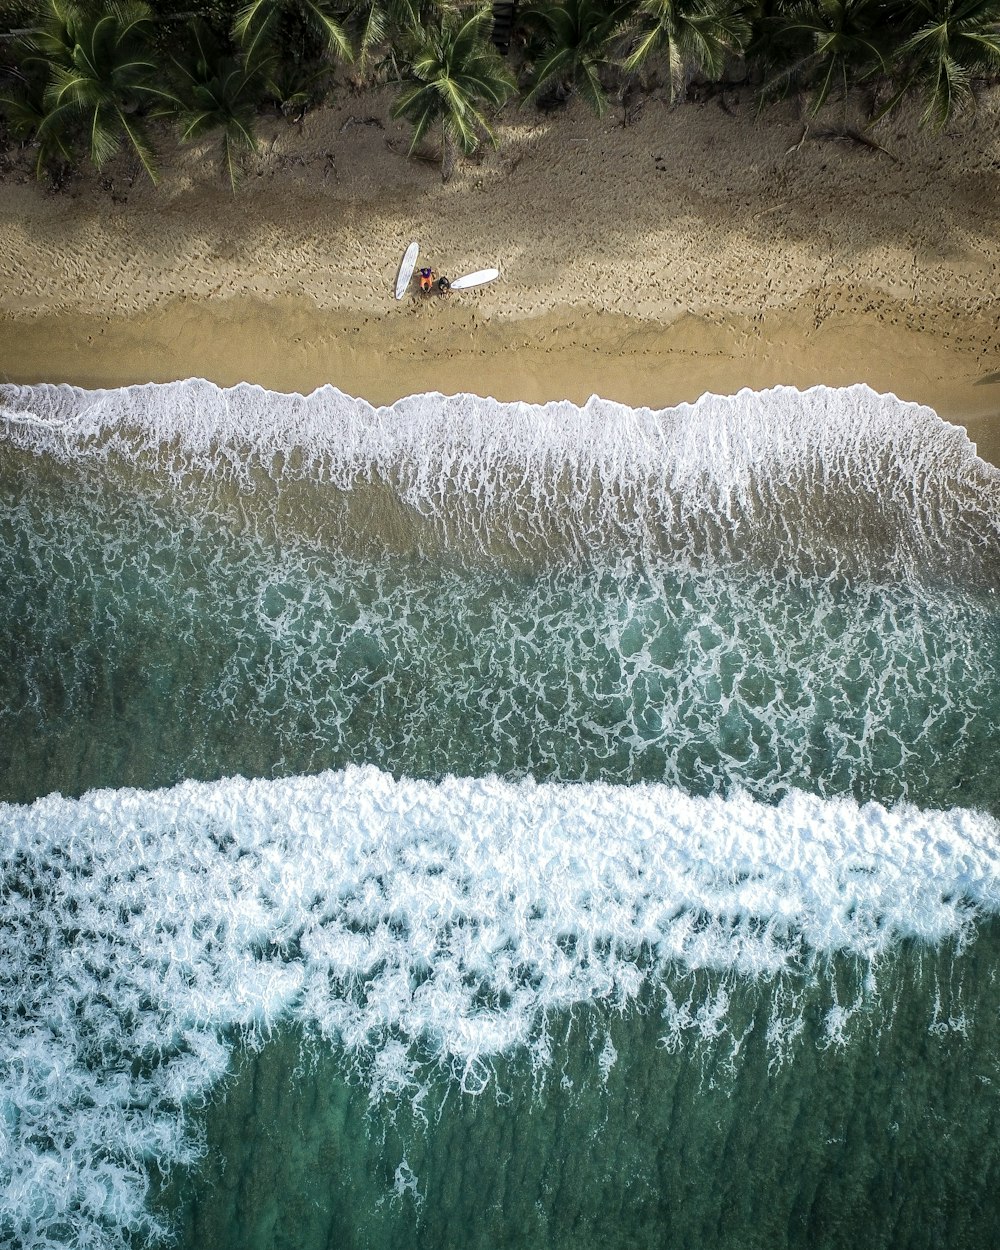 duas pranchas de surf e uma pessoa na costa durante o dia